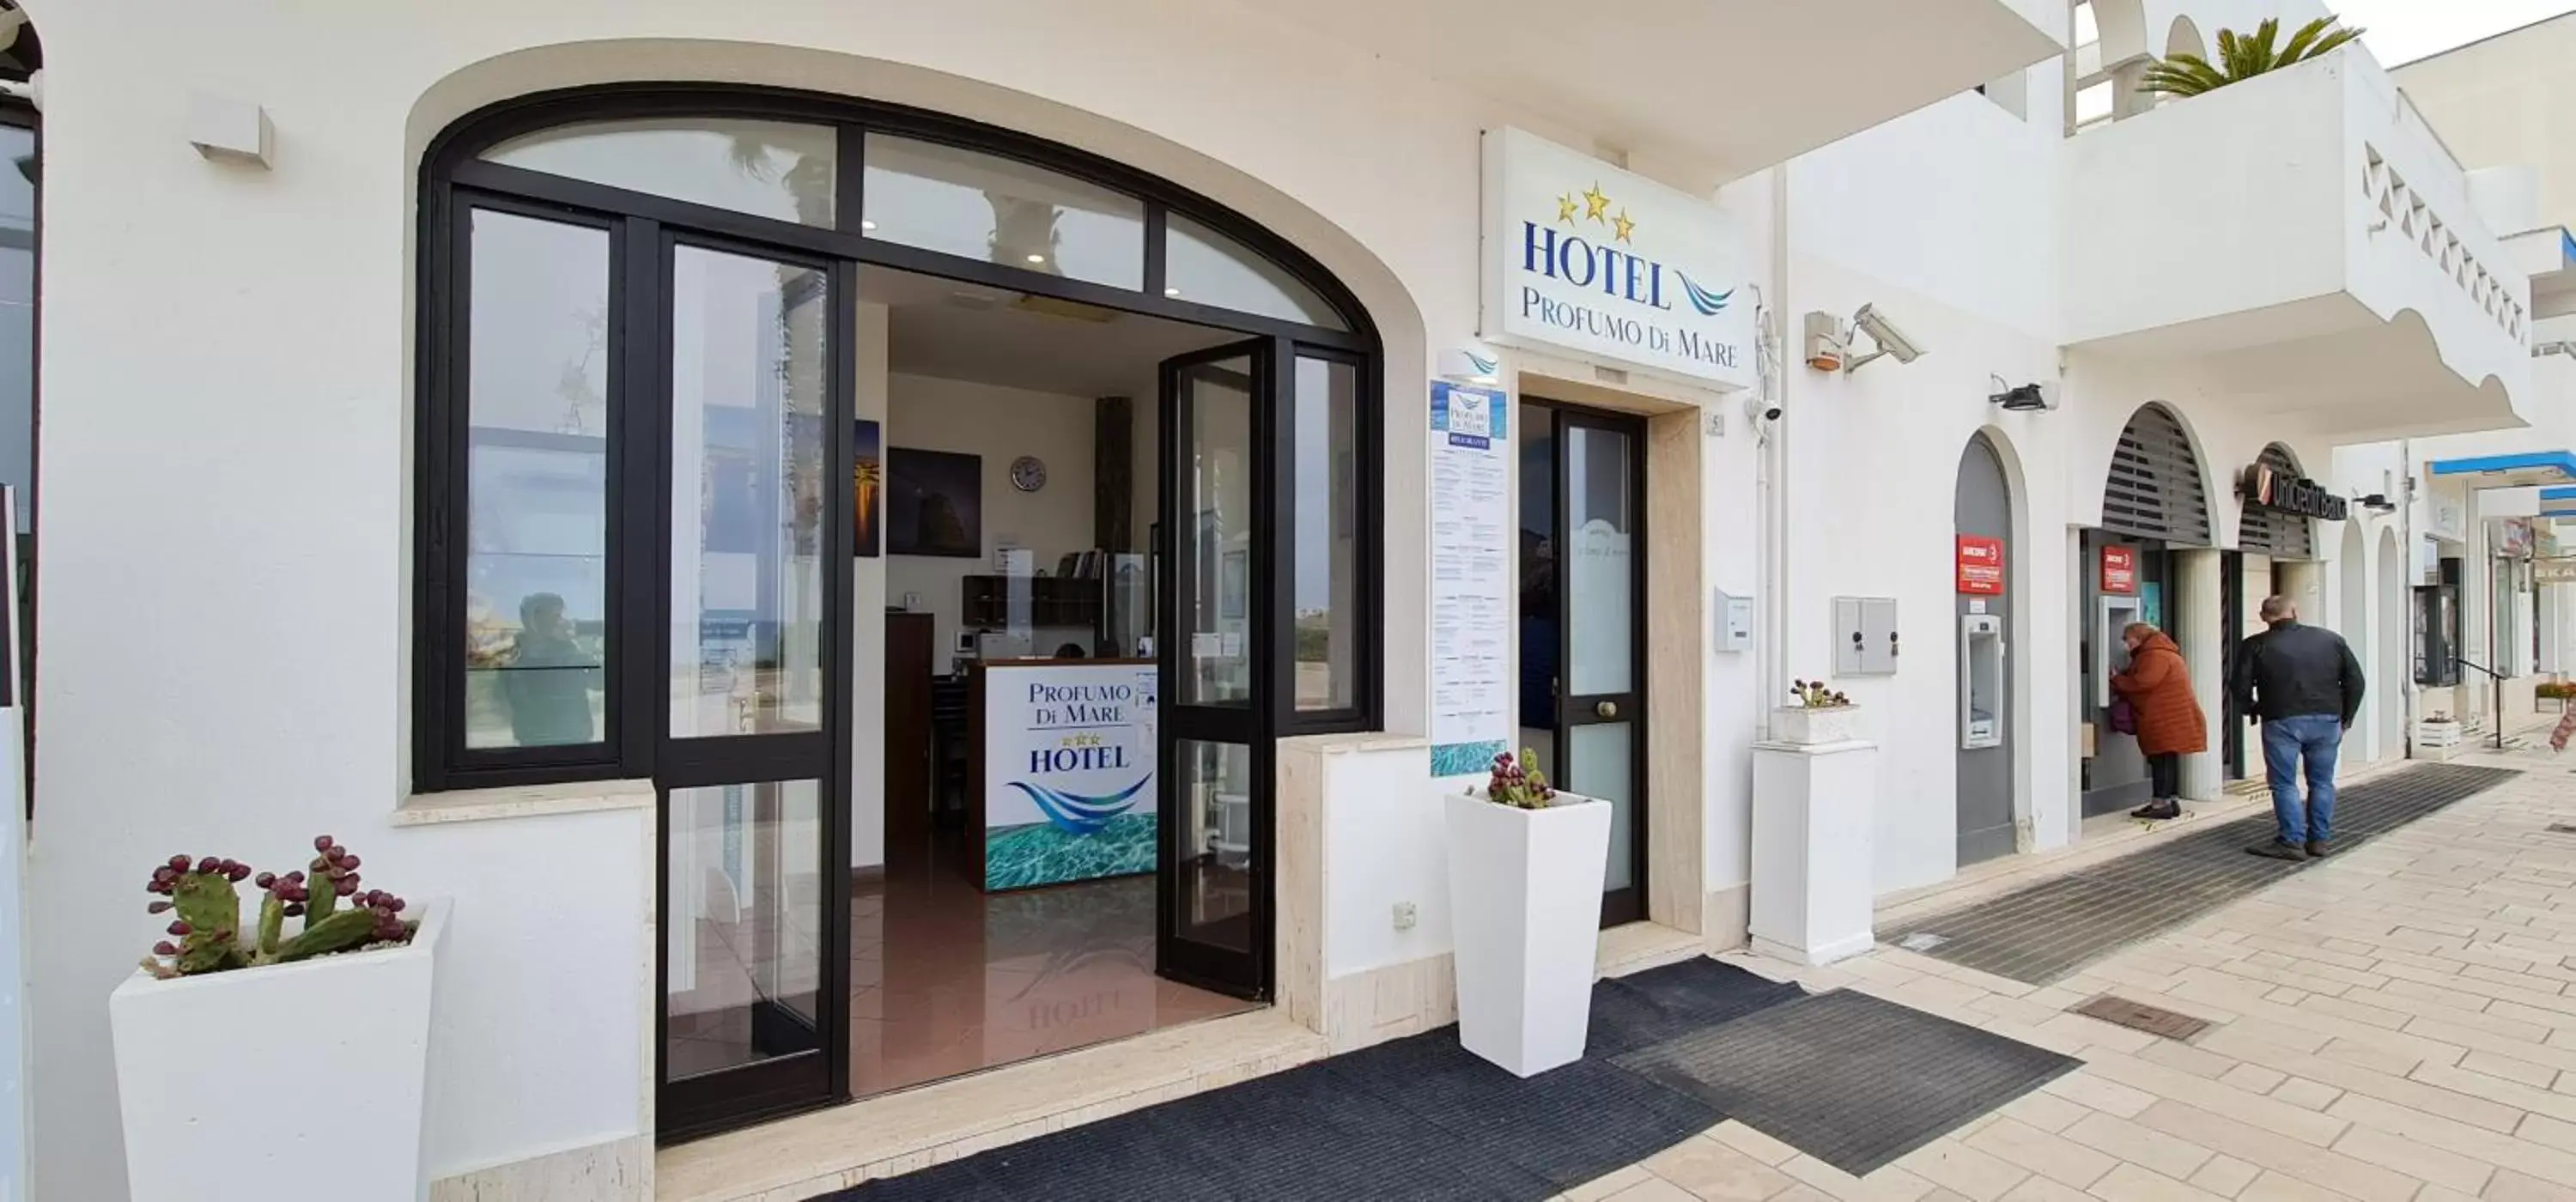 Lobby or reception in Hotel Profumo Di Mare